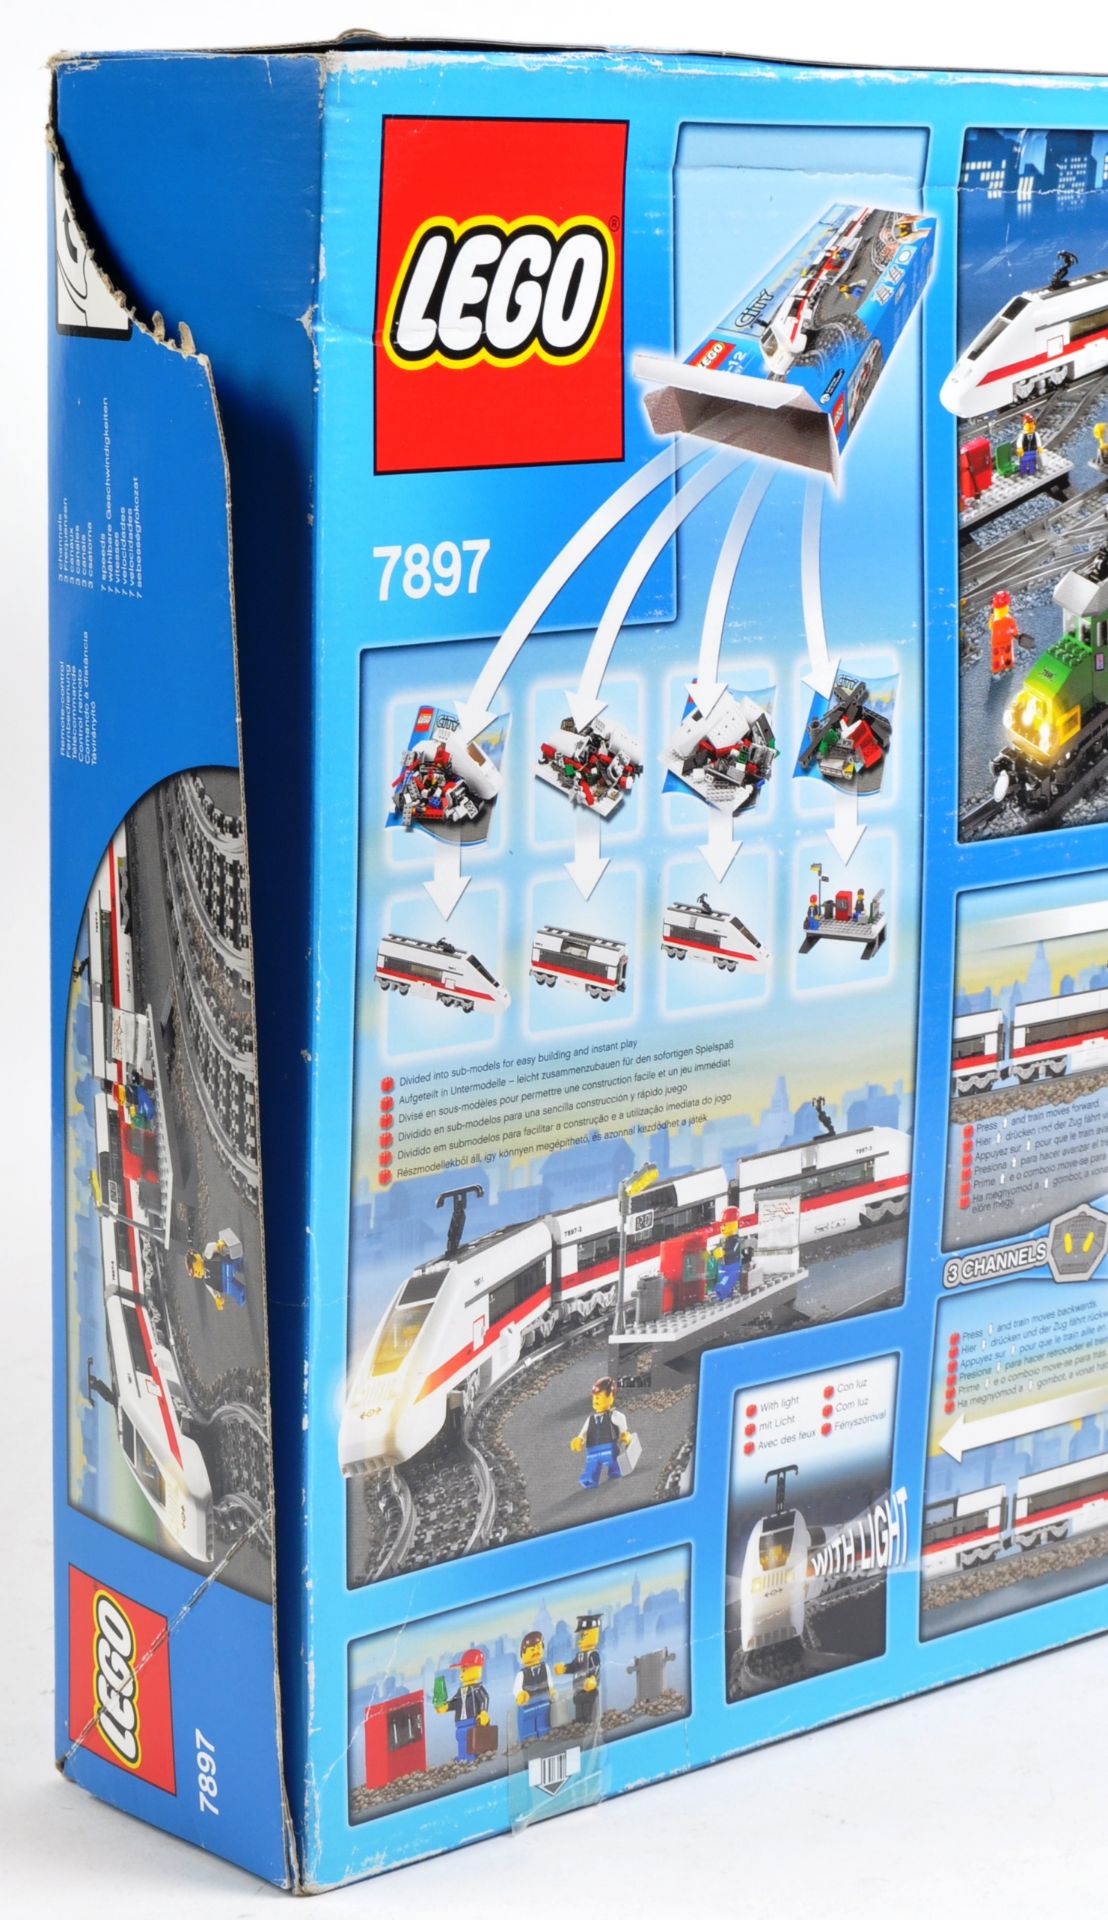 LEGO SET - LEGO CITY - 7897 - PASSENGER TRAIN - Image 4 of 4